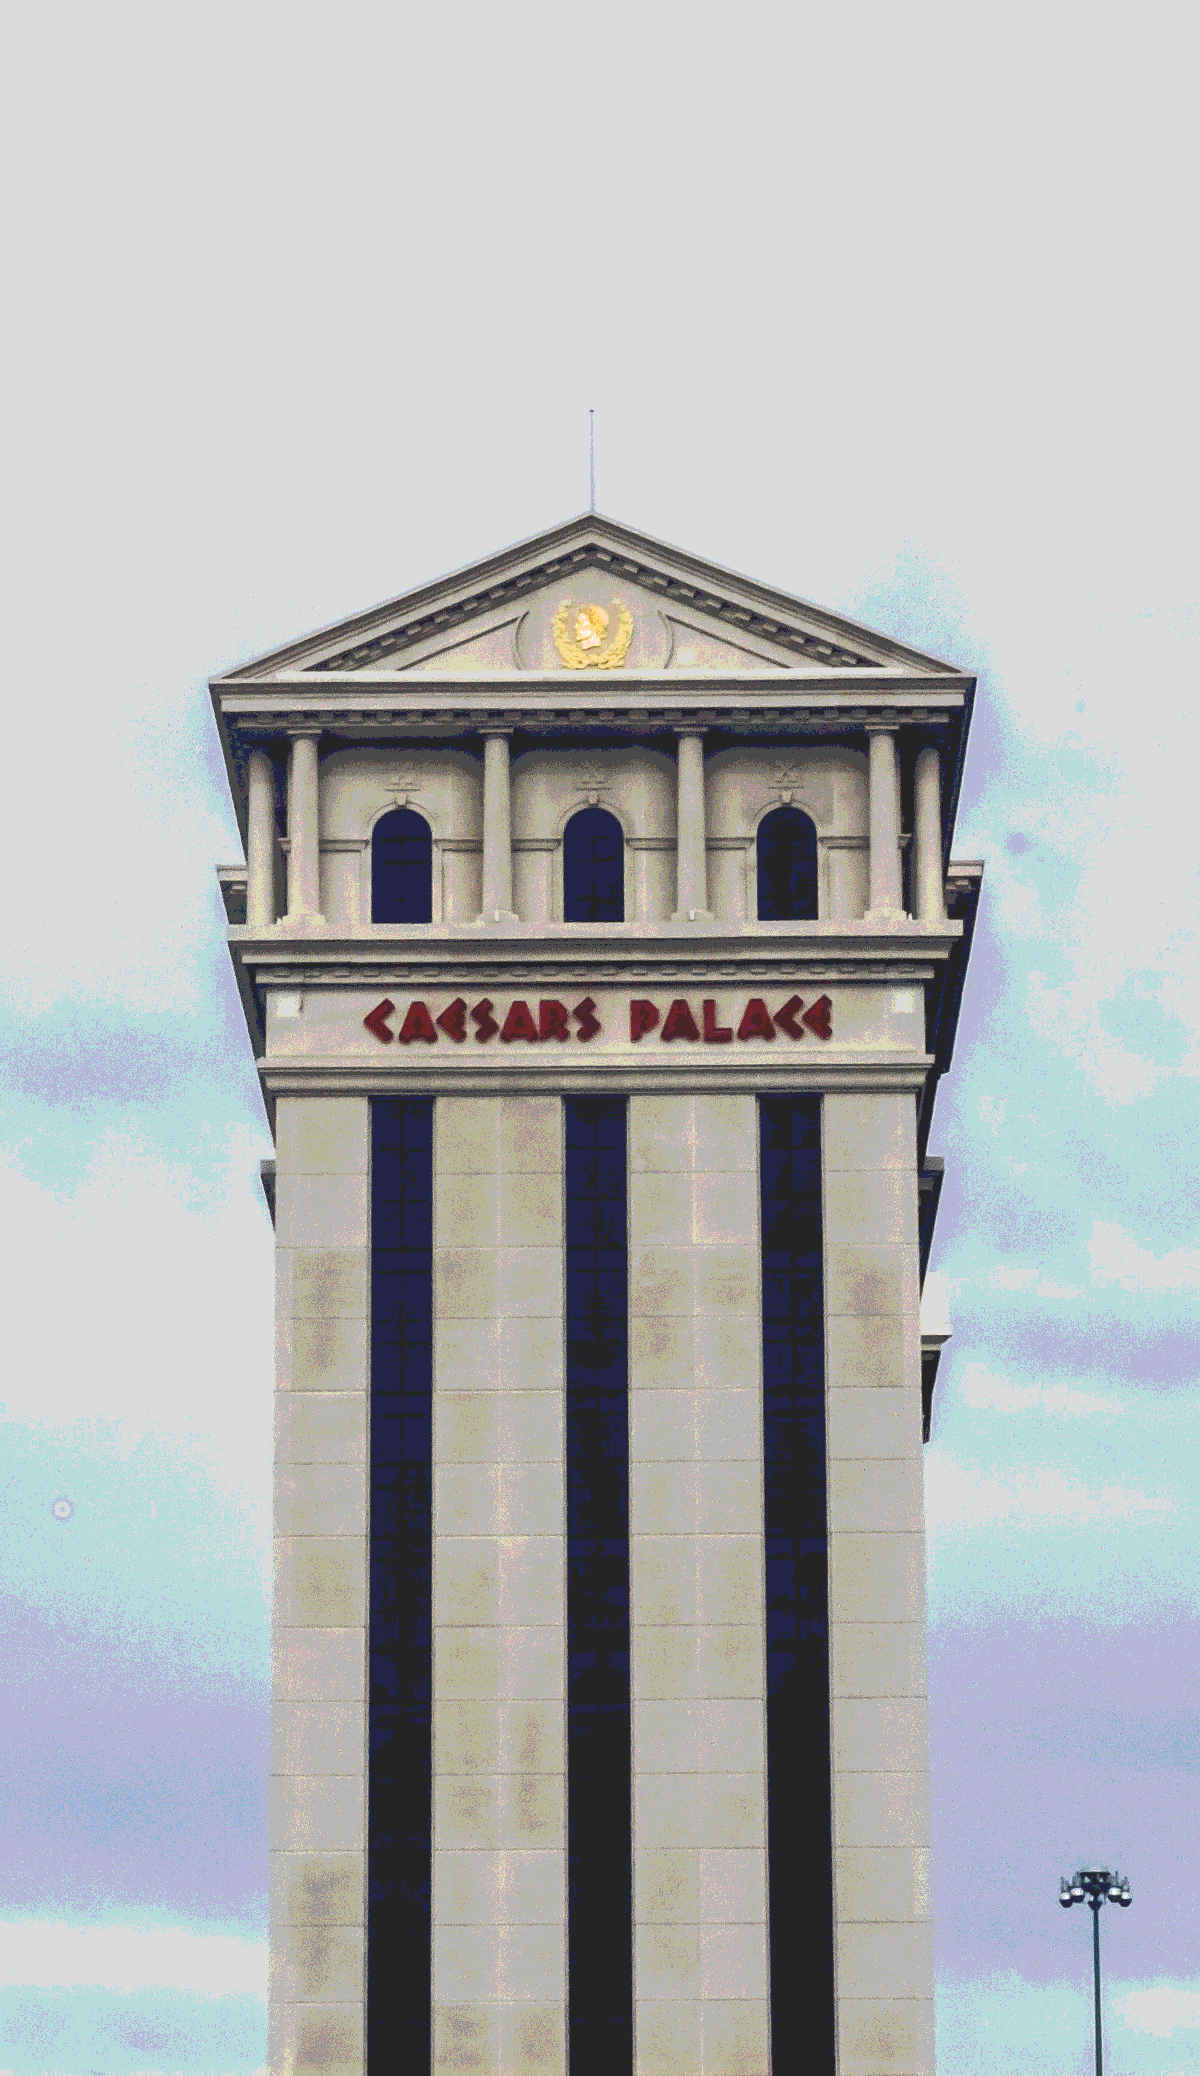 A Caesars Palace Las Vegas tower